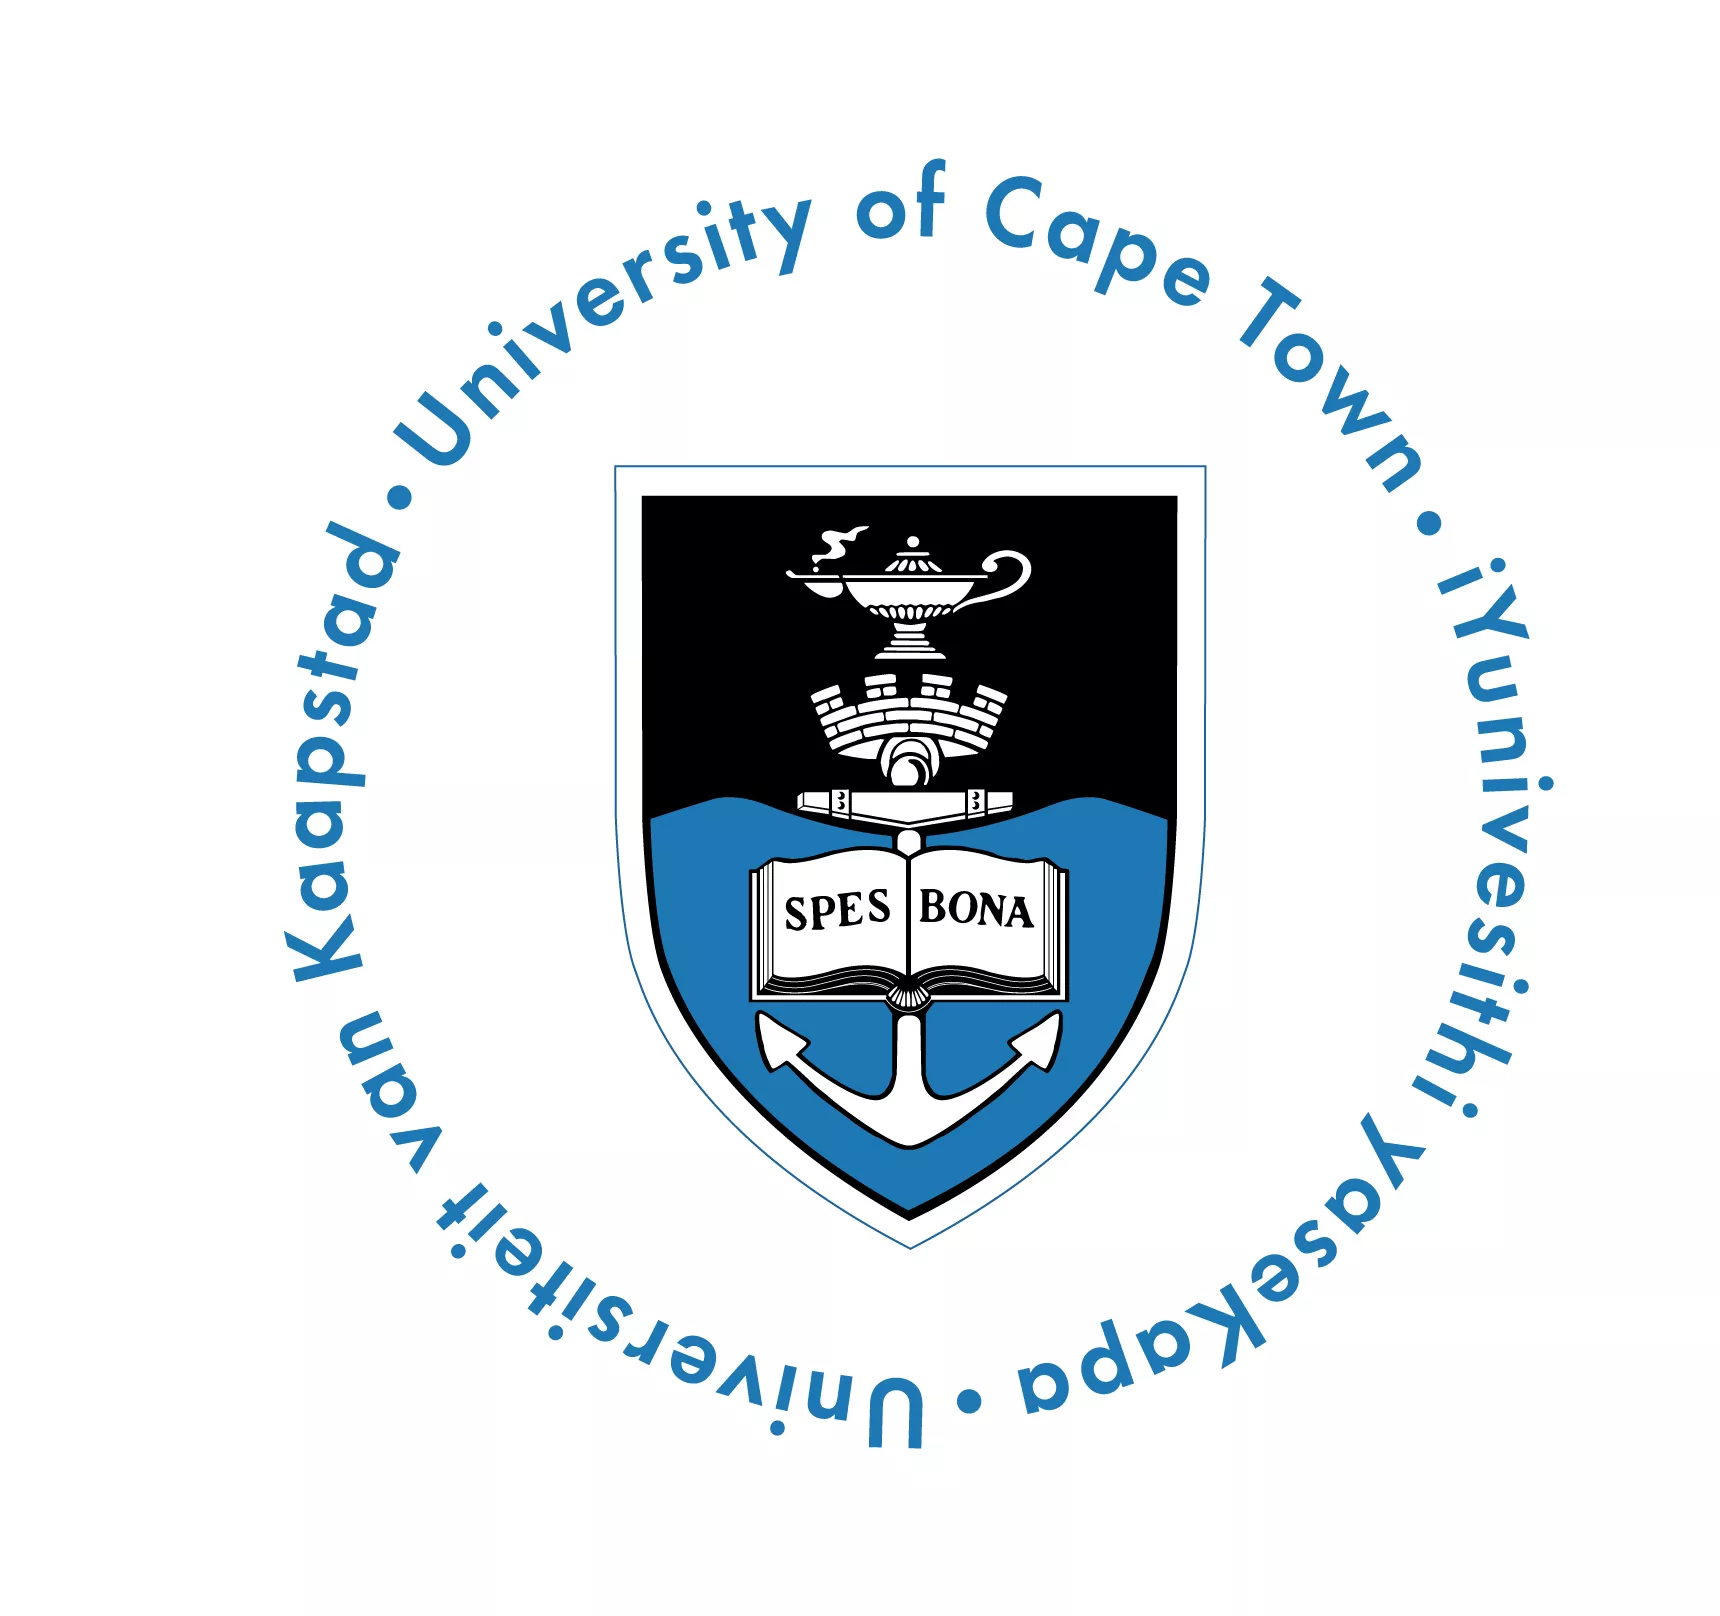 10 bourses d’études supérieures pour l’Université du Cap, 2018-2019